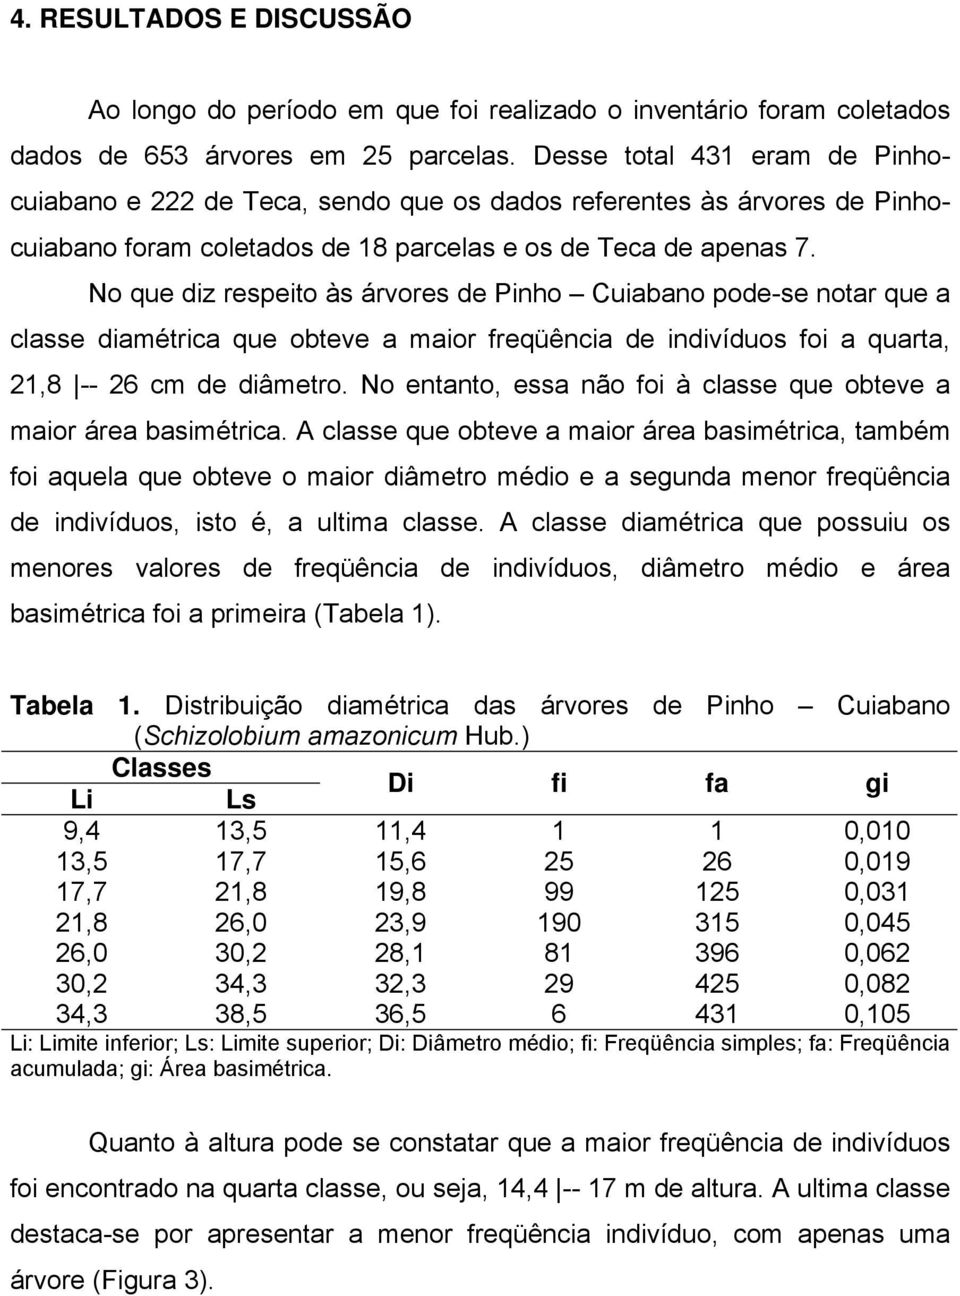 No que diz respeito às árvores de Pinho Cuiabano pode-se notar que a classe diamétrica que obteve a maior freqüência de indivíduos foi a quarta, 21,8 -- 26 cm de diâmetro.